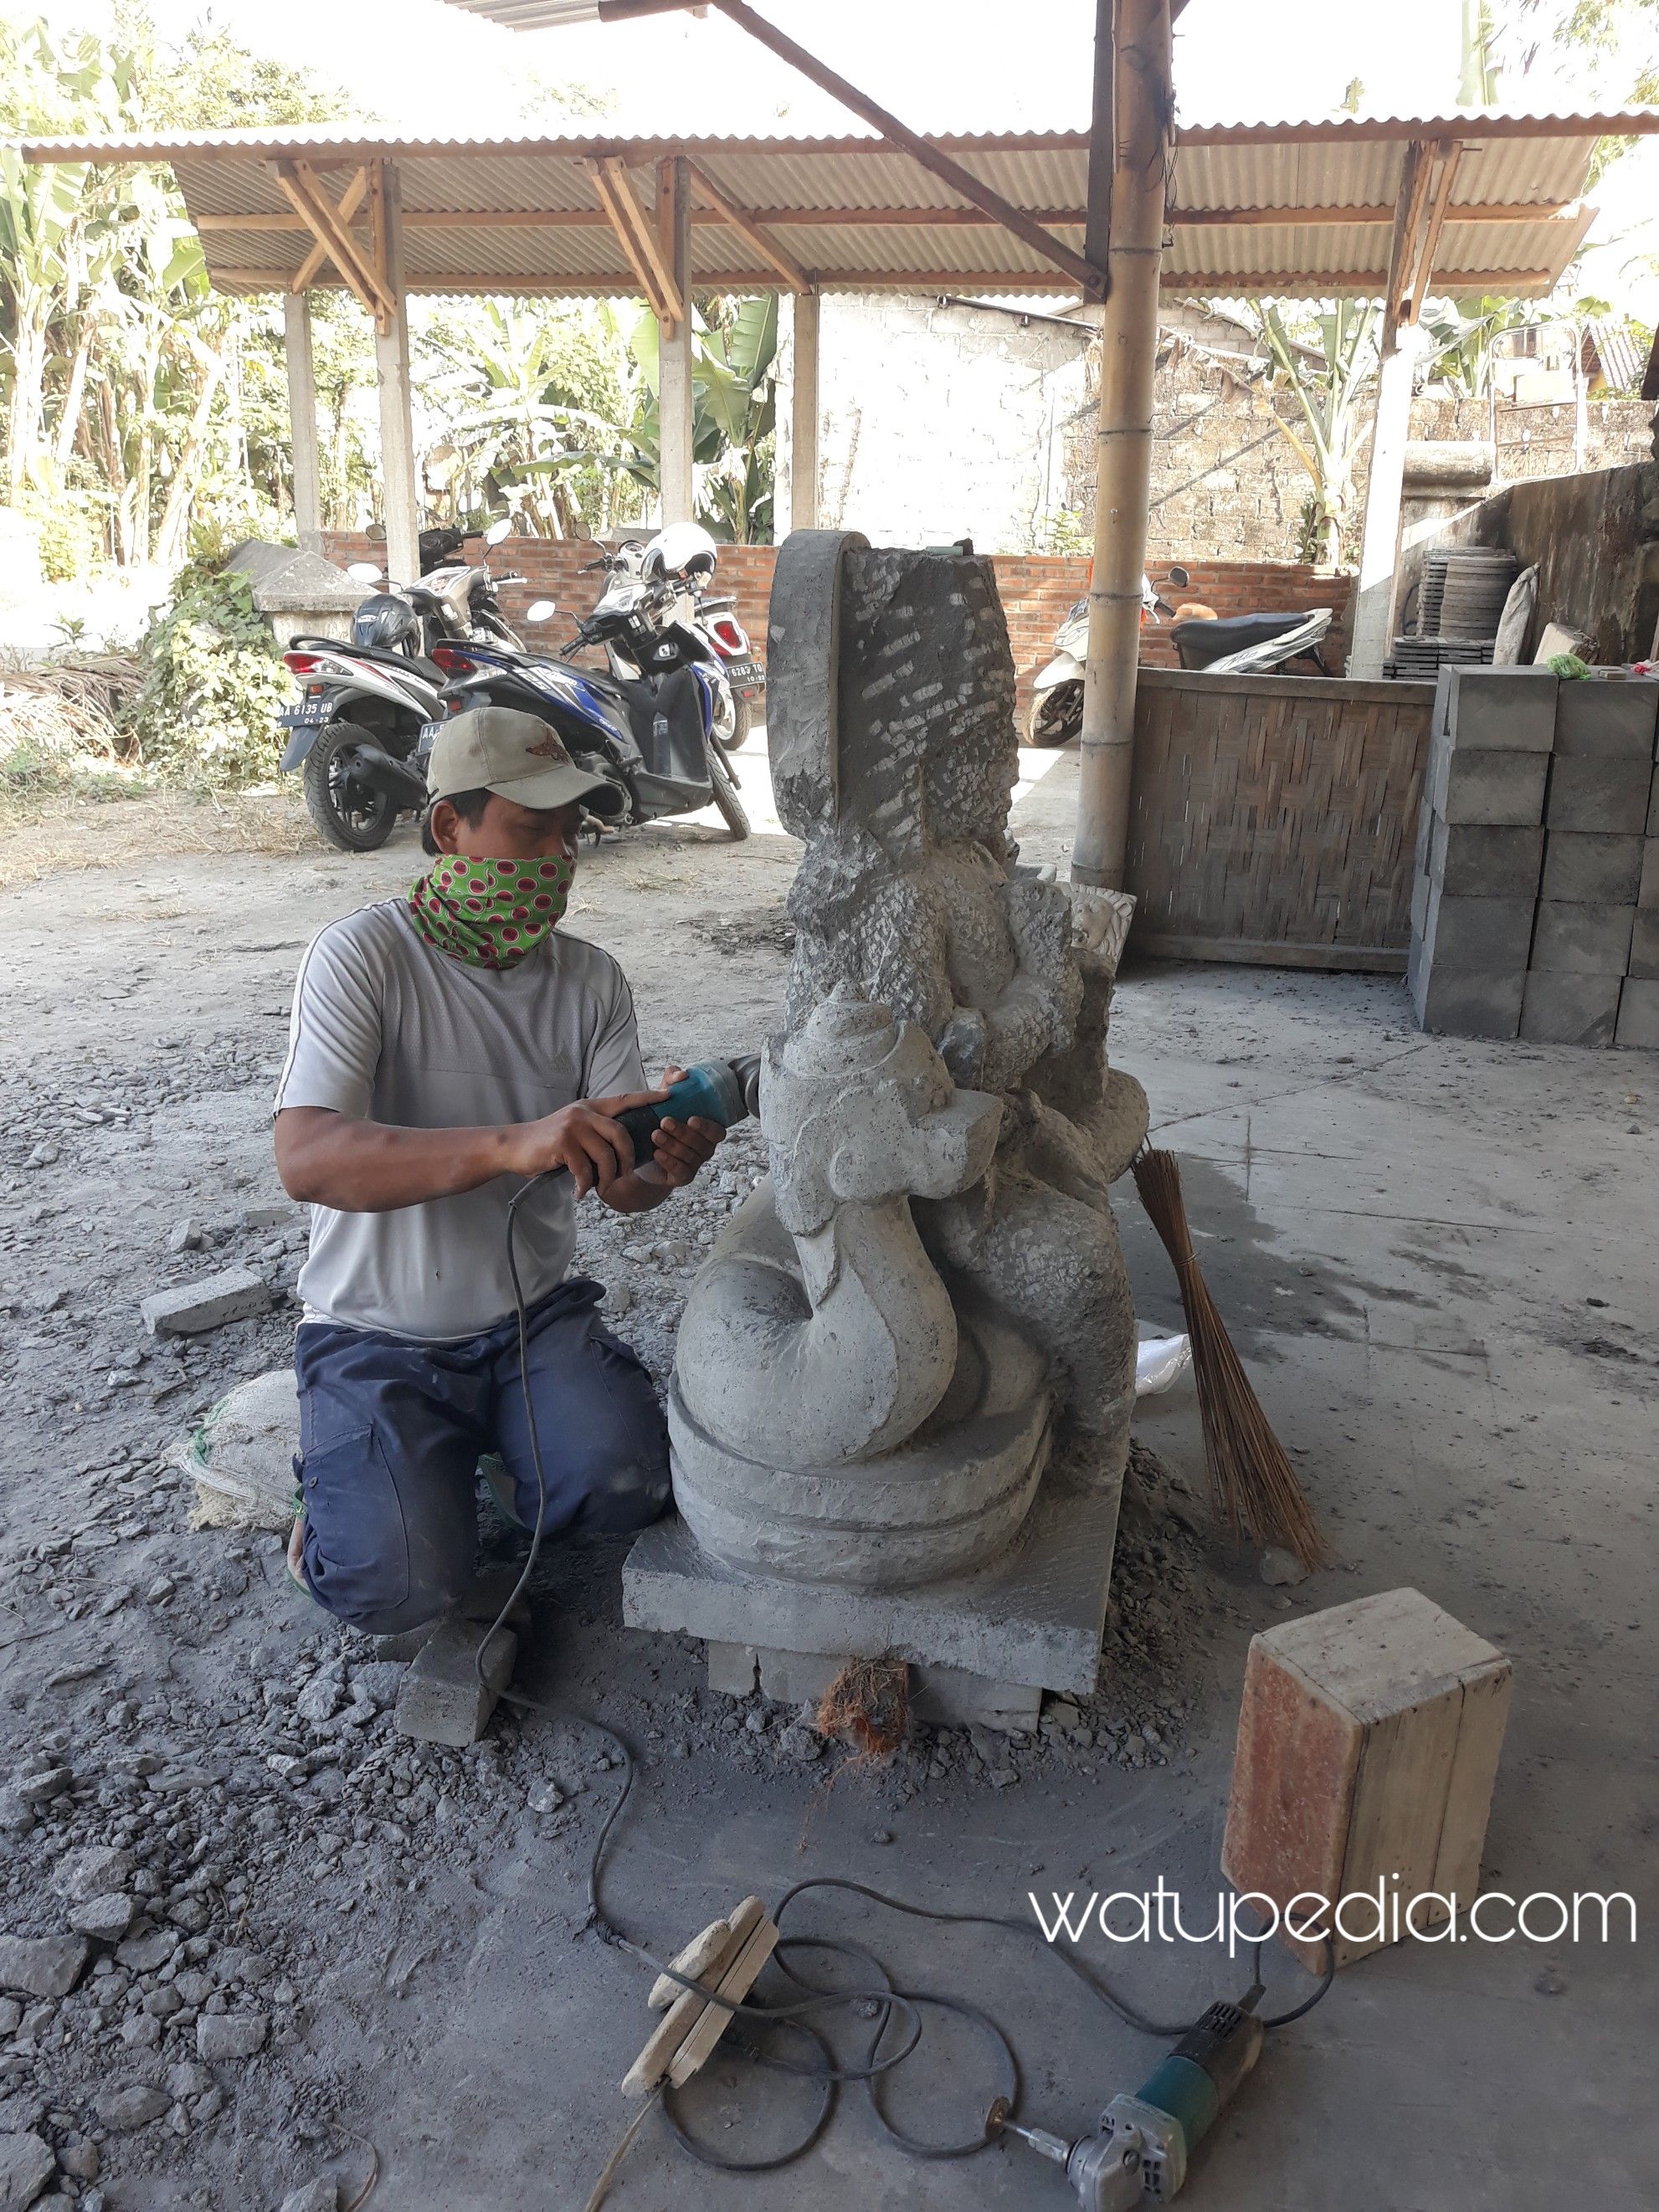 sebutkan 3 contoh bahan yang digunakan untuk membuat patung dengan teknik carving